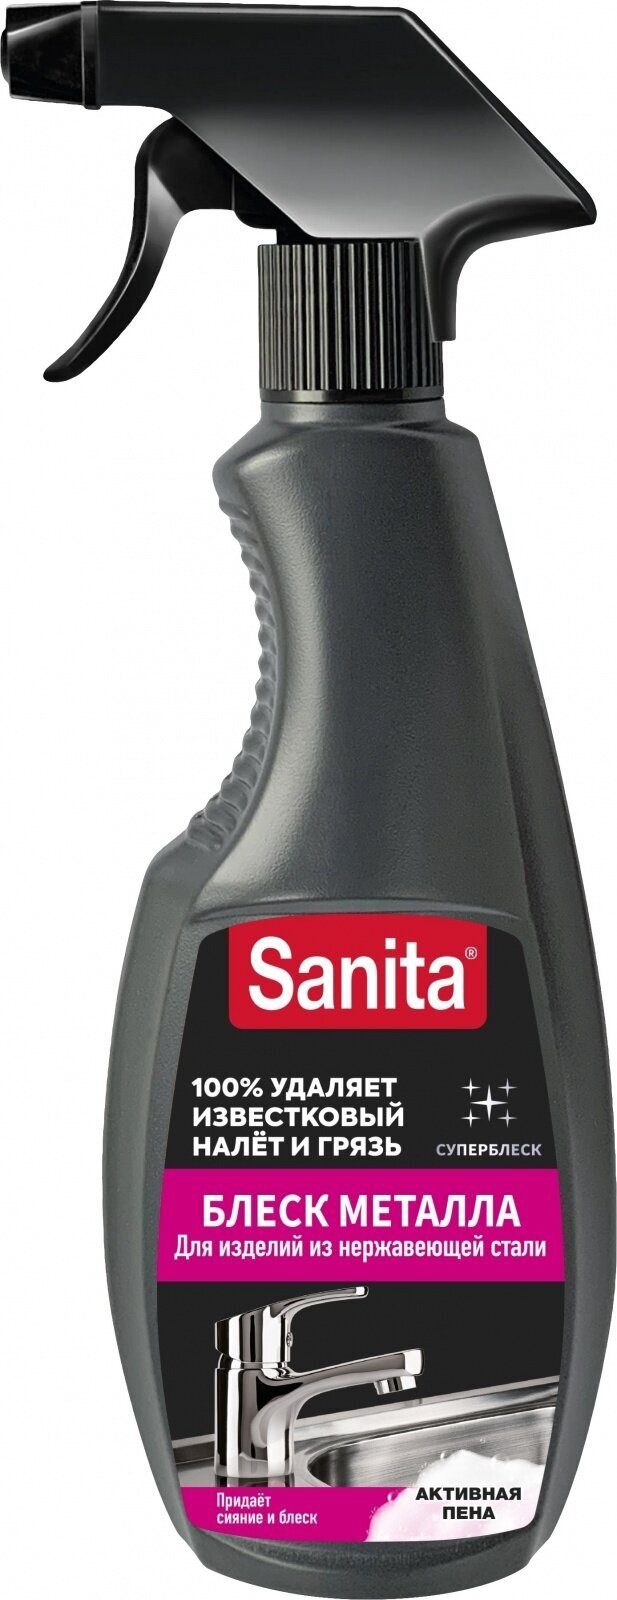 Универсальное чистящее средство Sanita спрей блеск металла, 500 мл (Спрей)